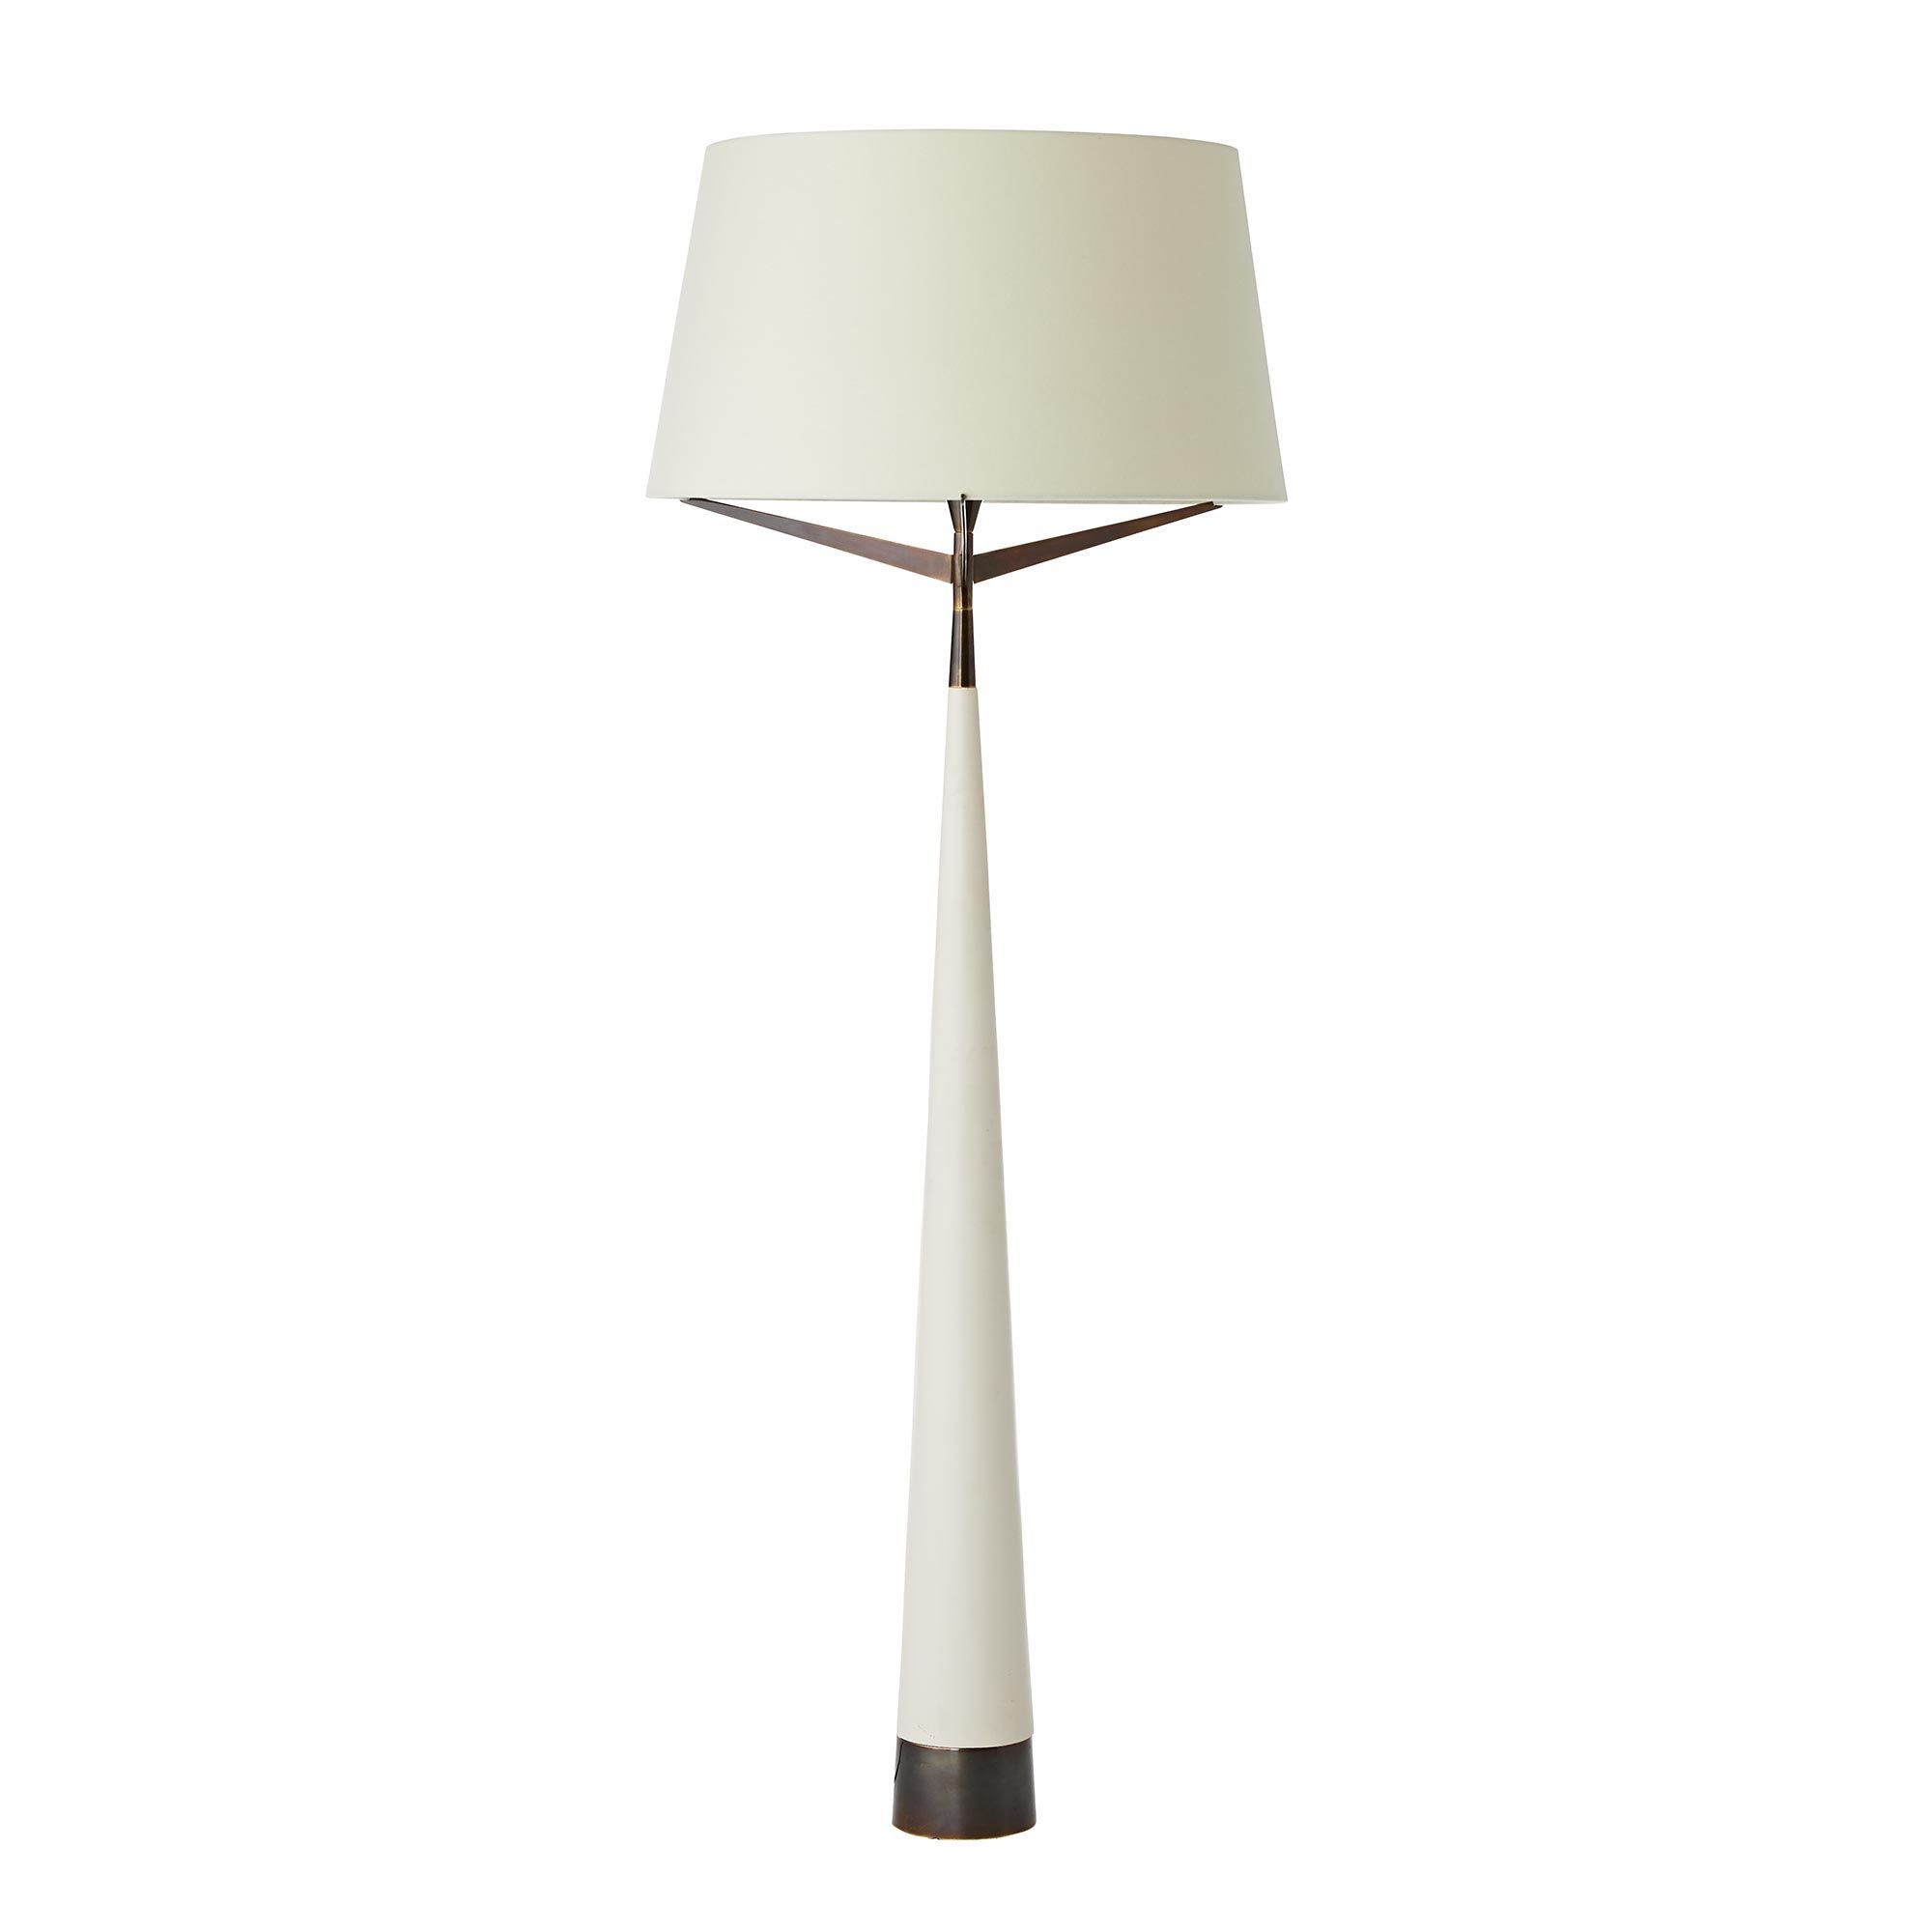 79160 401 – Elden Floor Lamp – Ivory Resin, Heritage Brass Regarding Cone Floor Lamps (View 12 of 20)